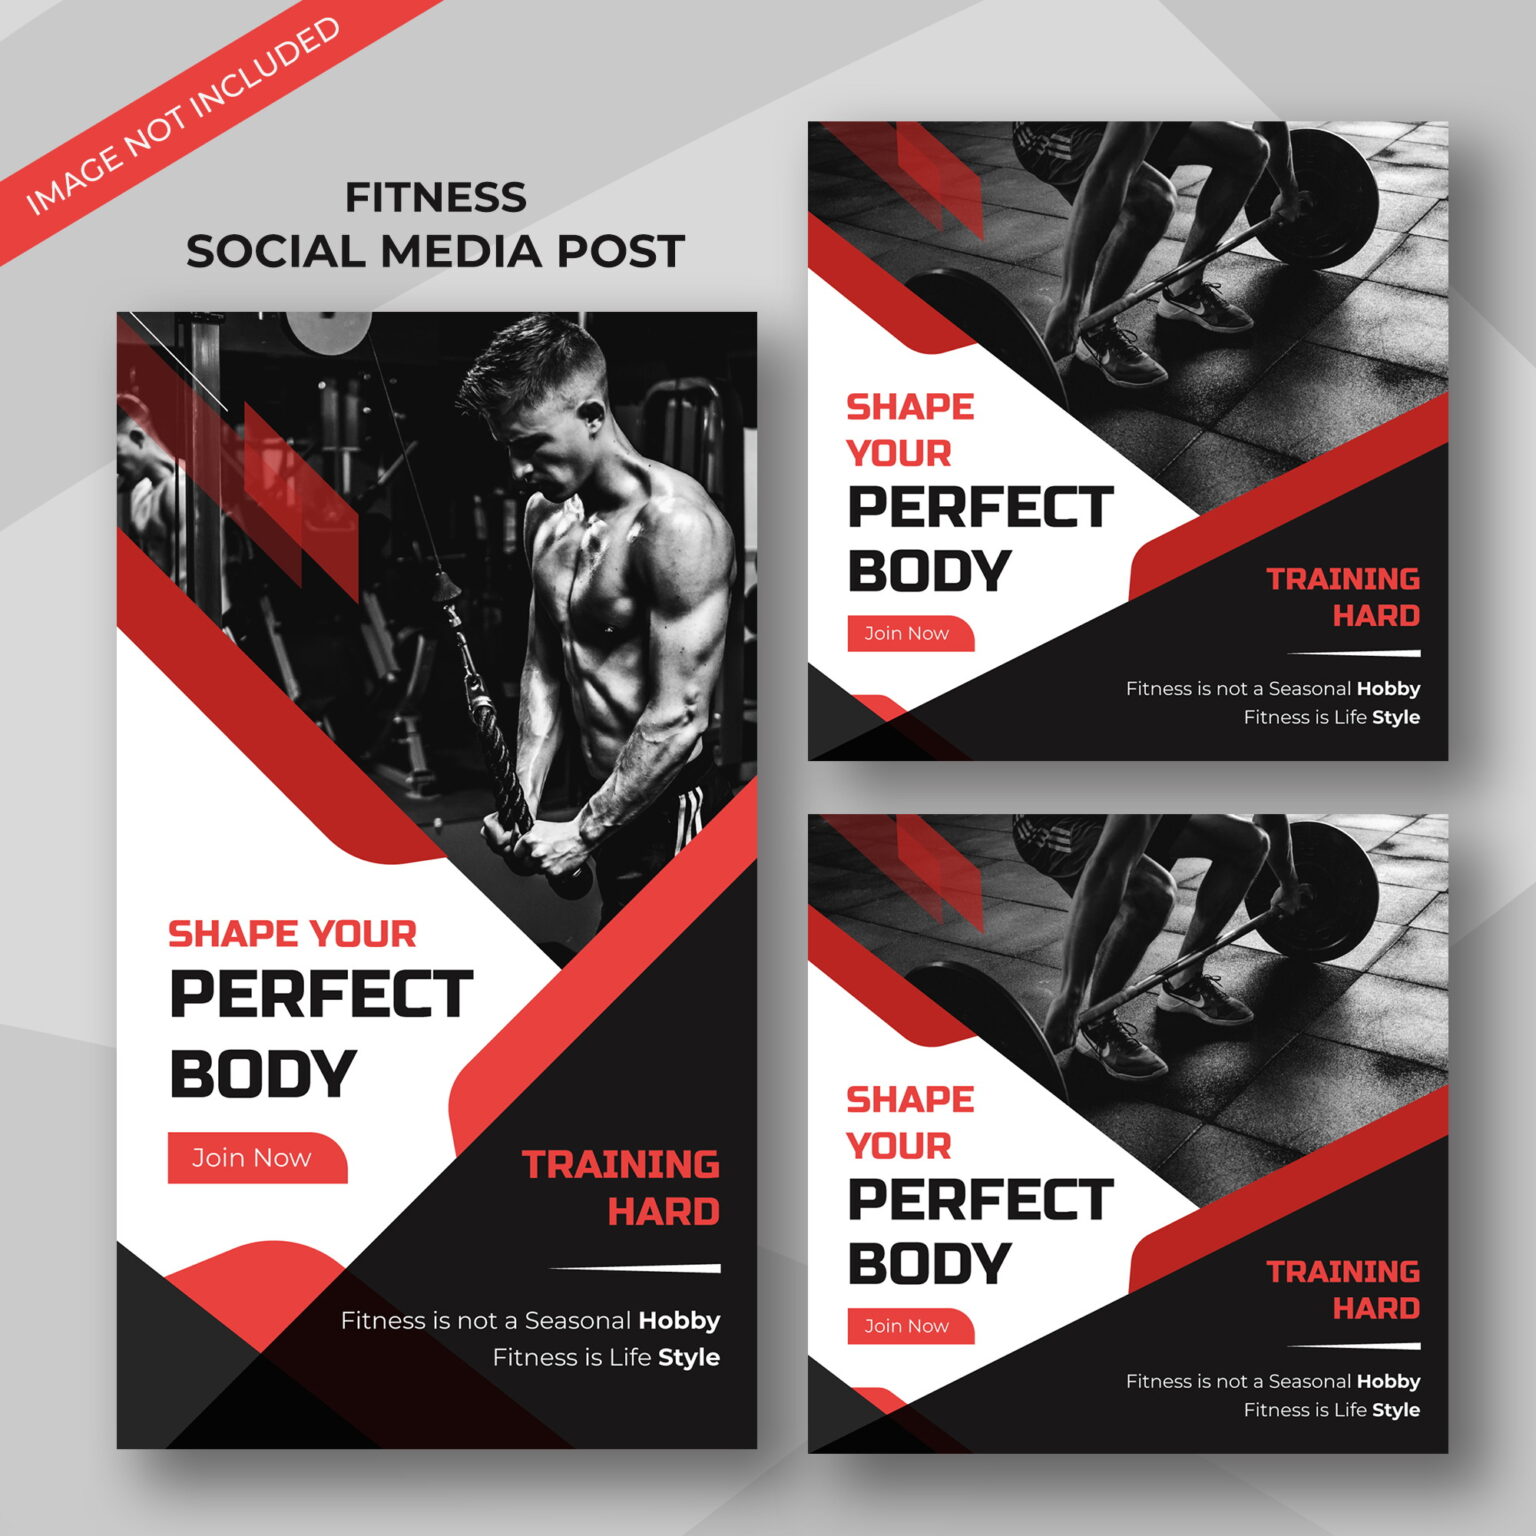 Fitness GYM Banner Set for Social Media Platforms